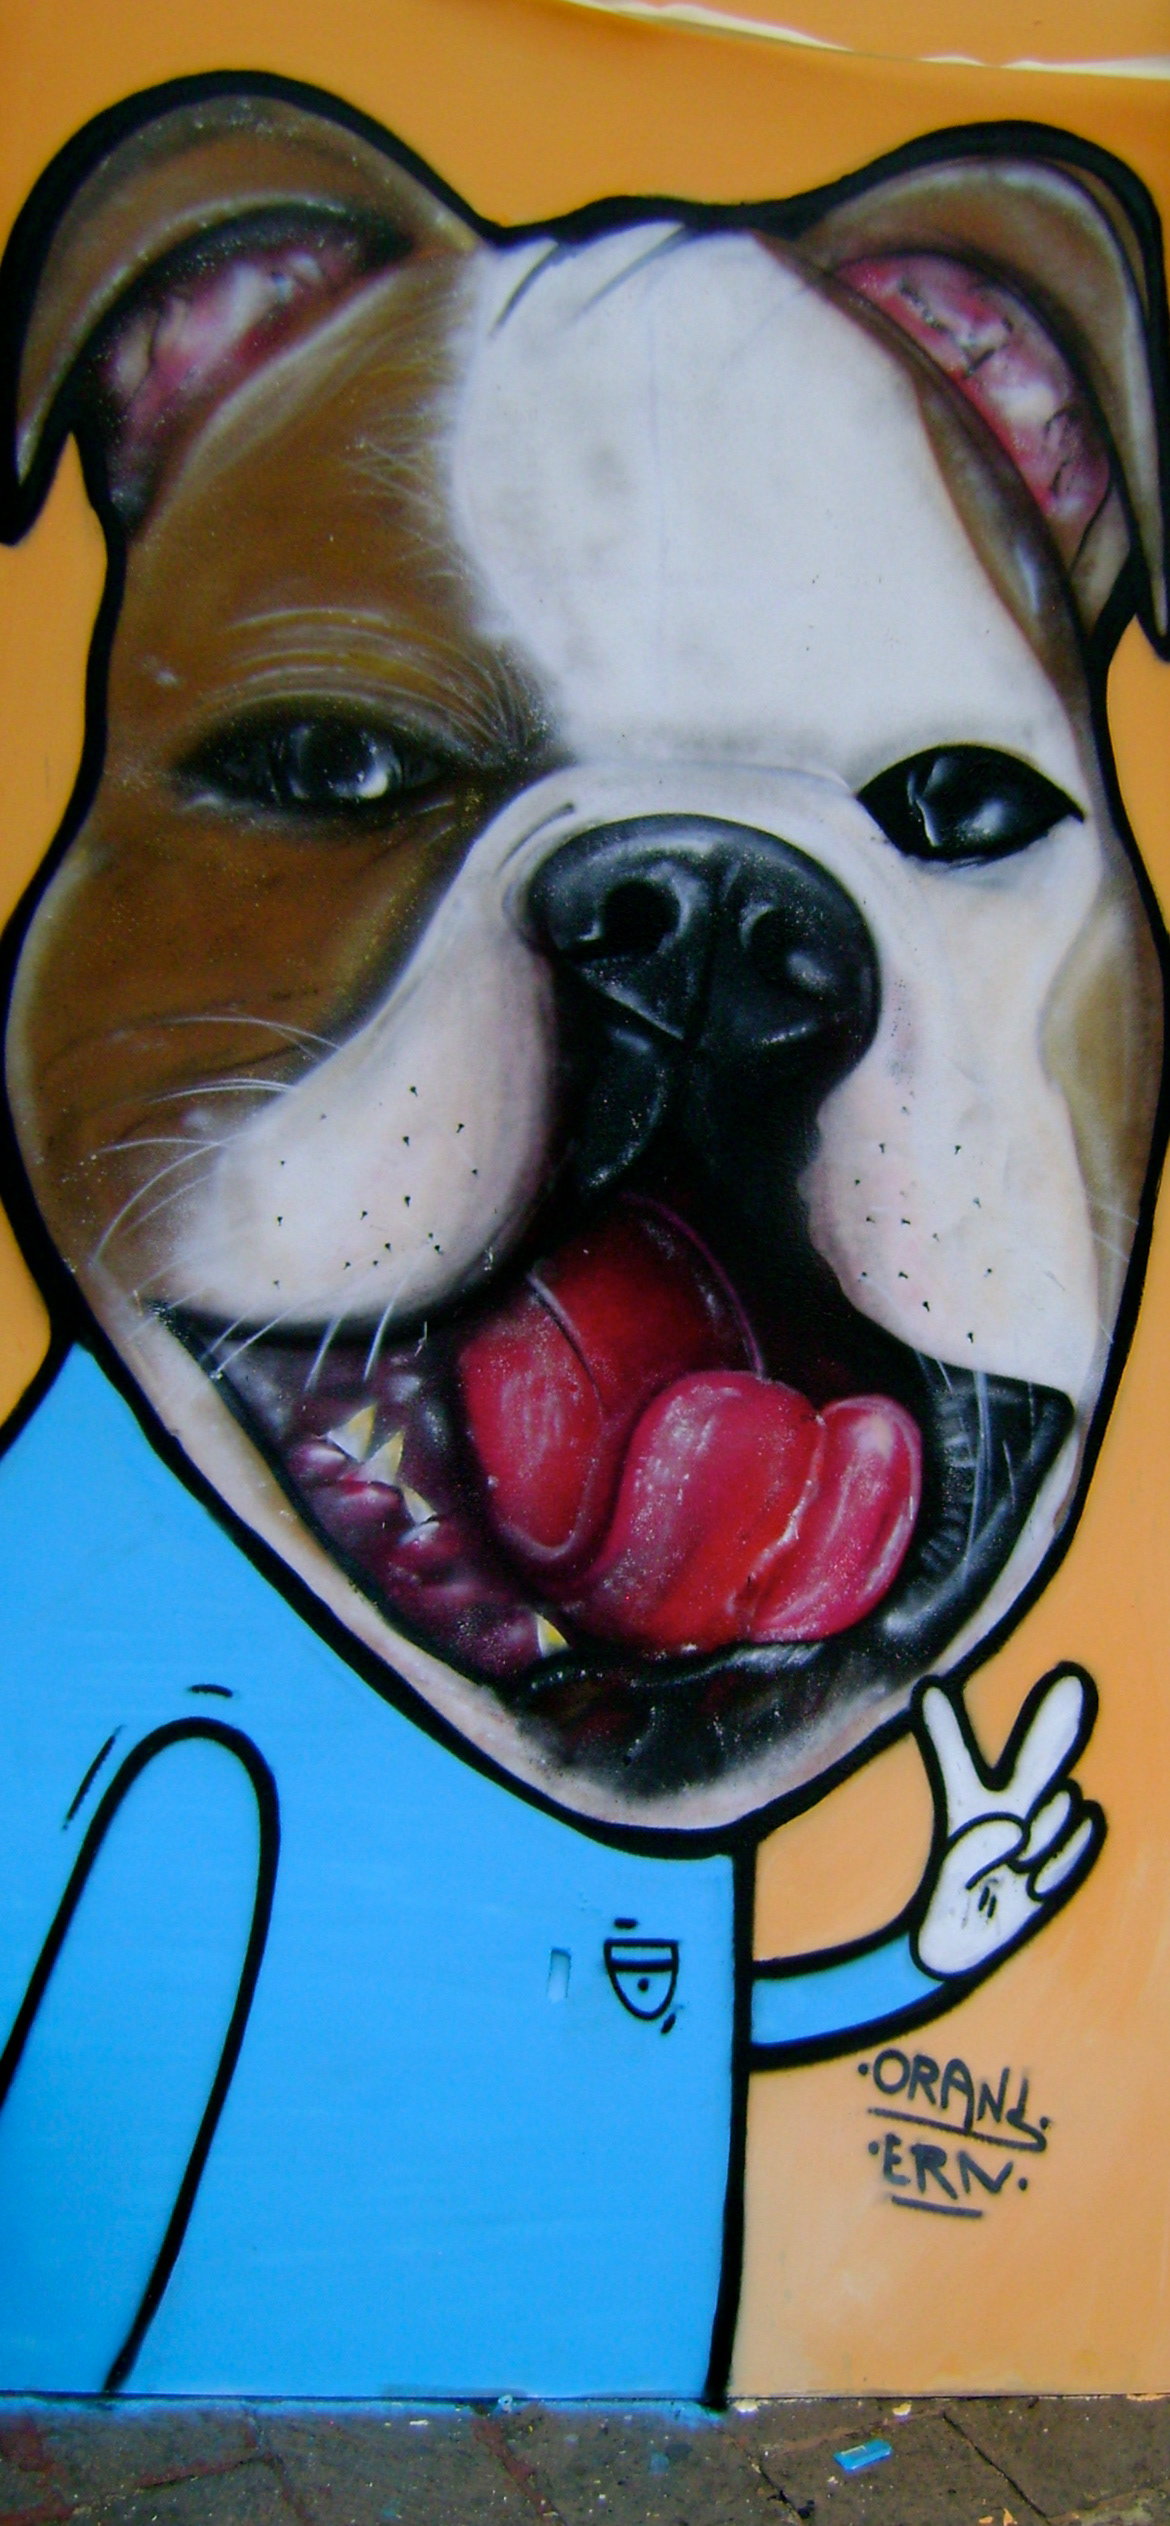 #graffiti #Tiempodeperros #Mascotas #dogs #street art #Calle #Mexico   #Querétaro